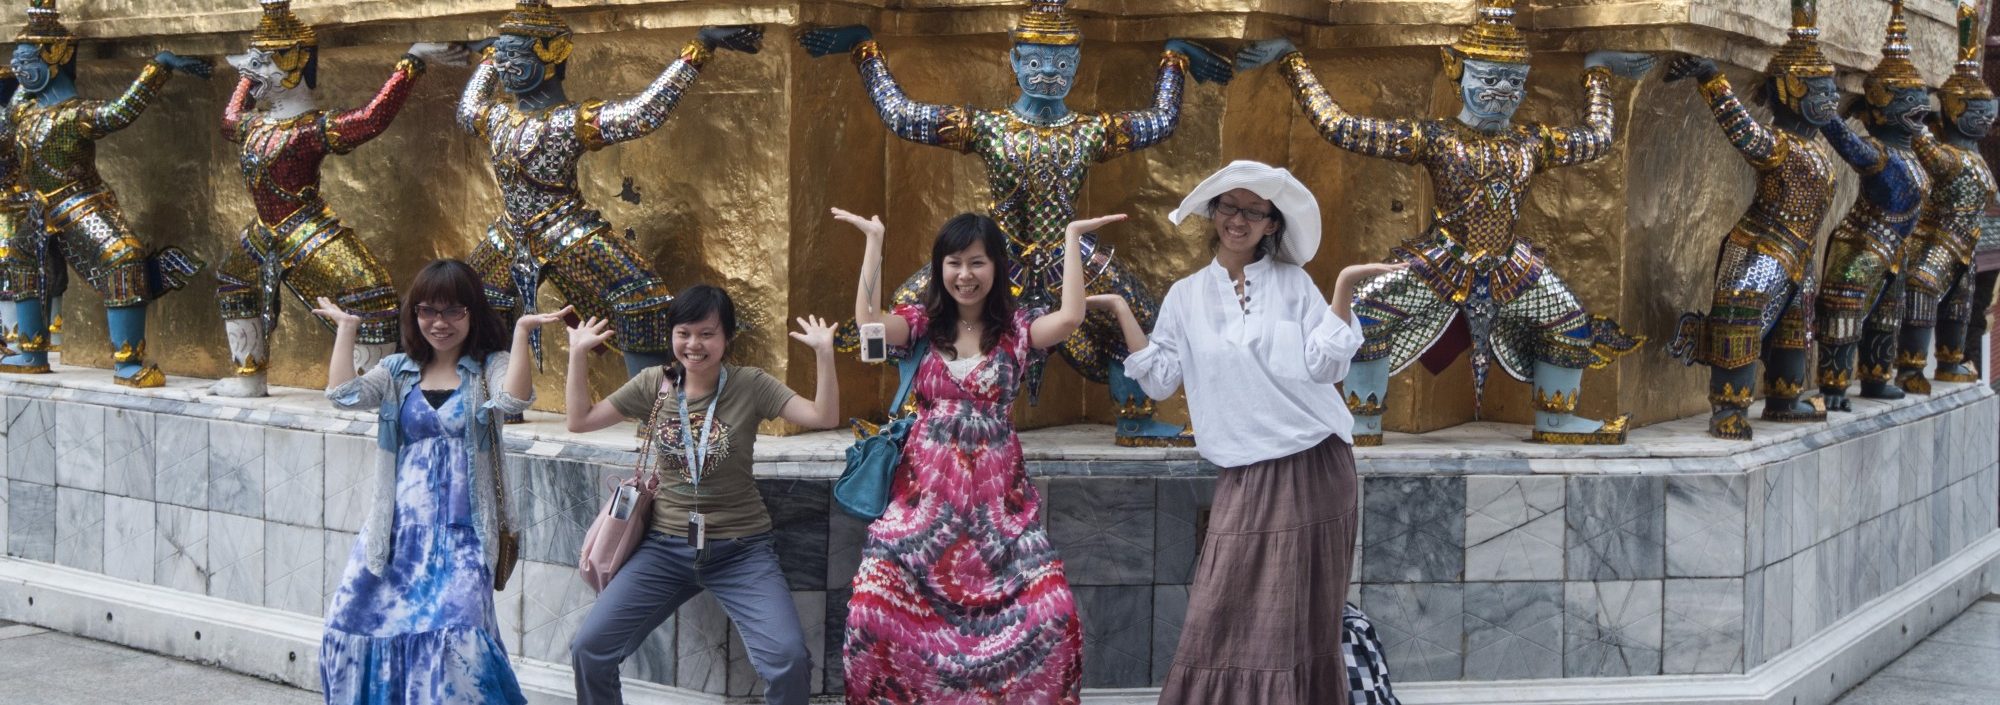 Les "Zero dollar tours" organisés par les tours-opérateurs chinois ont participé à déclencher la vague touristique de Chine en Thaïlande. (Source : South China Morning Post)